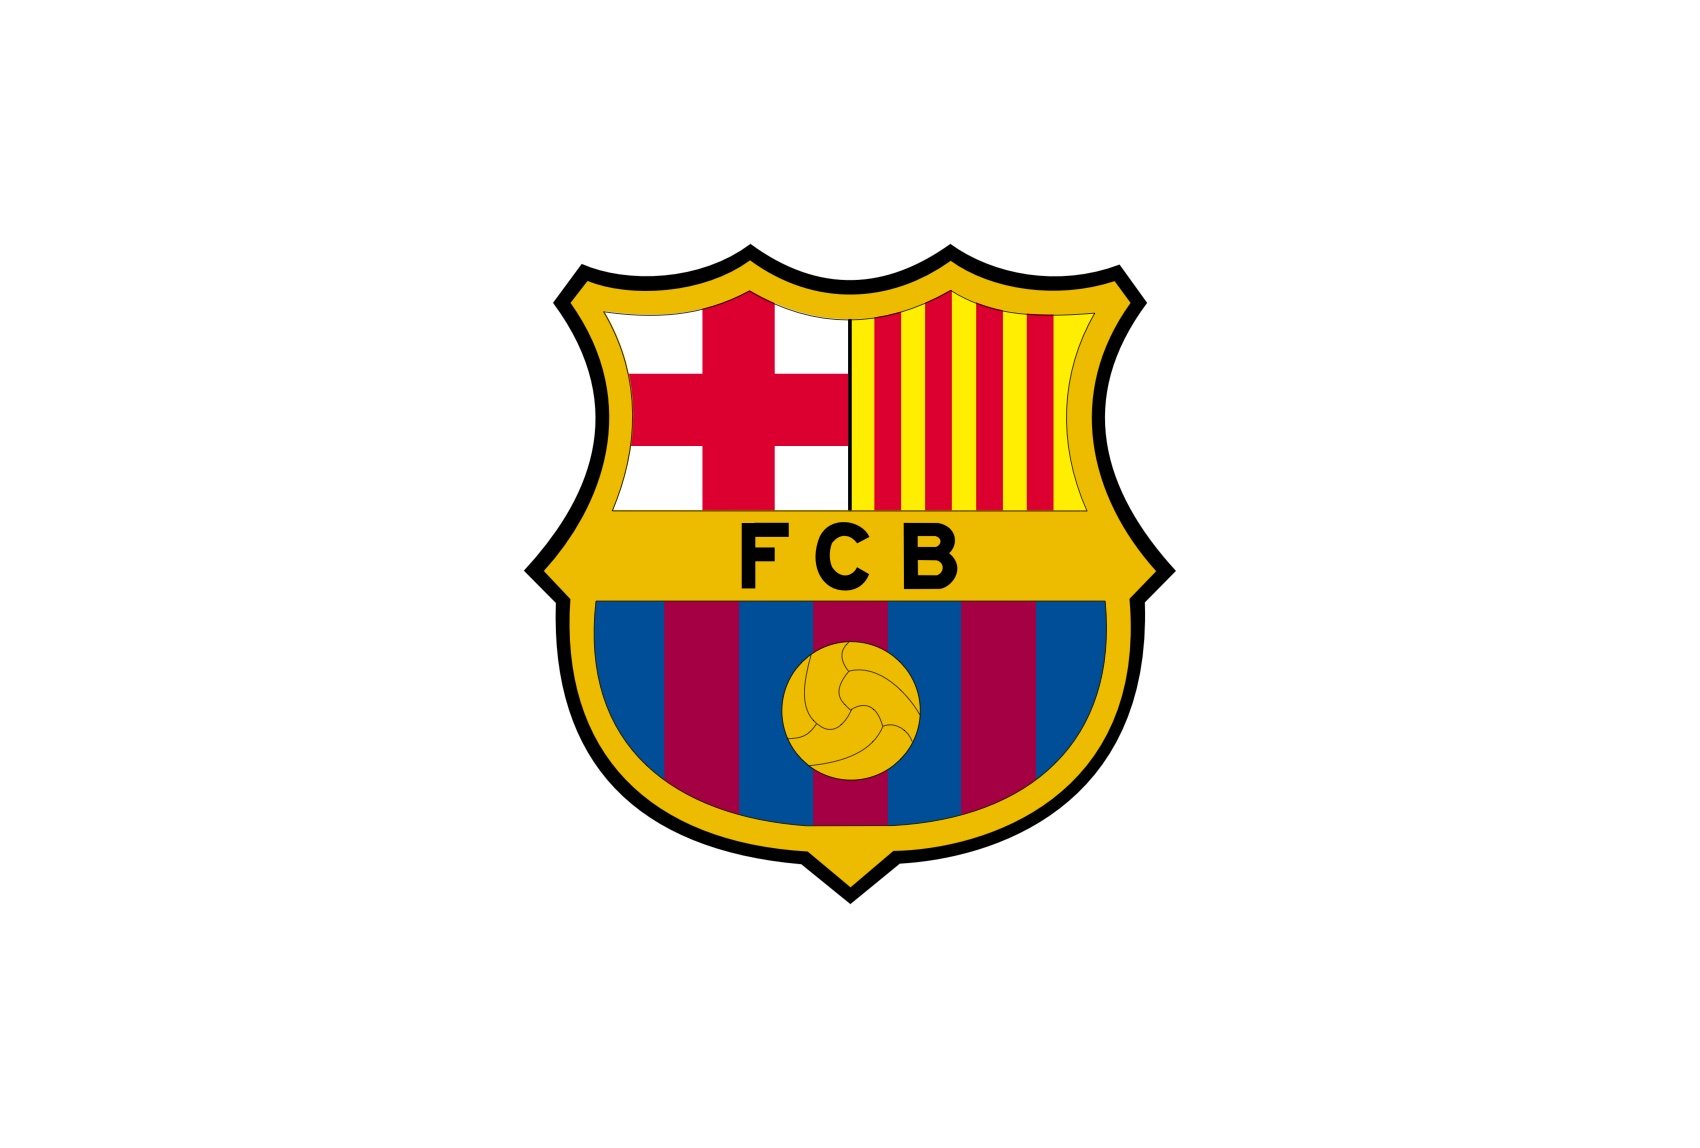 european soccer logos and names